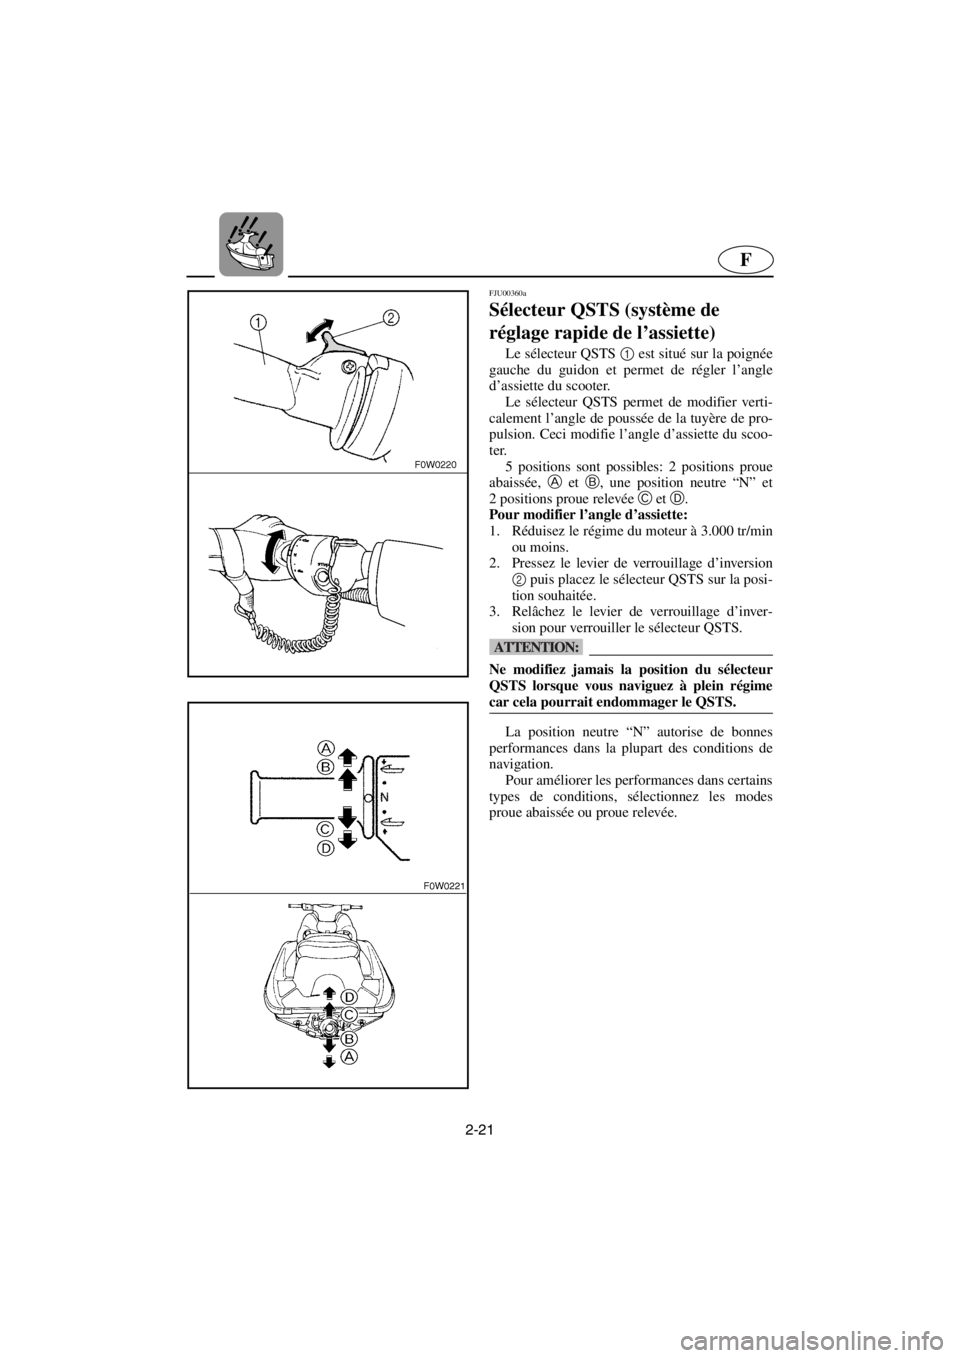 YAMAHA GP1200 2001  Manuale de Empleo (in Spanish) 2-21
F
FJU00360a 
Sélecteur QSTS (système de 
réglage rapide de l’assiette)  
Le sélecteur QSTS 1
 est situé sur la poignée
gauche du guidon et permet de régler l’angle
d’assiette du scoo